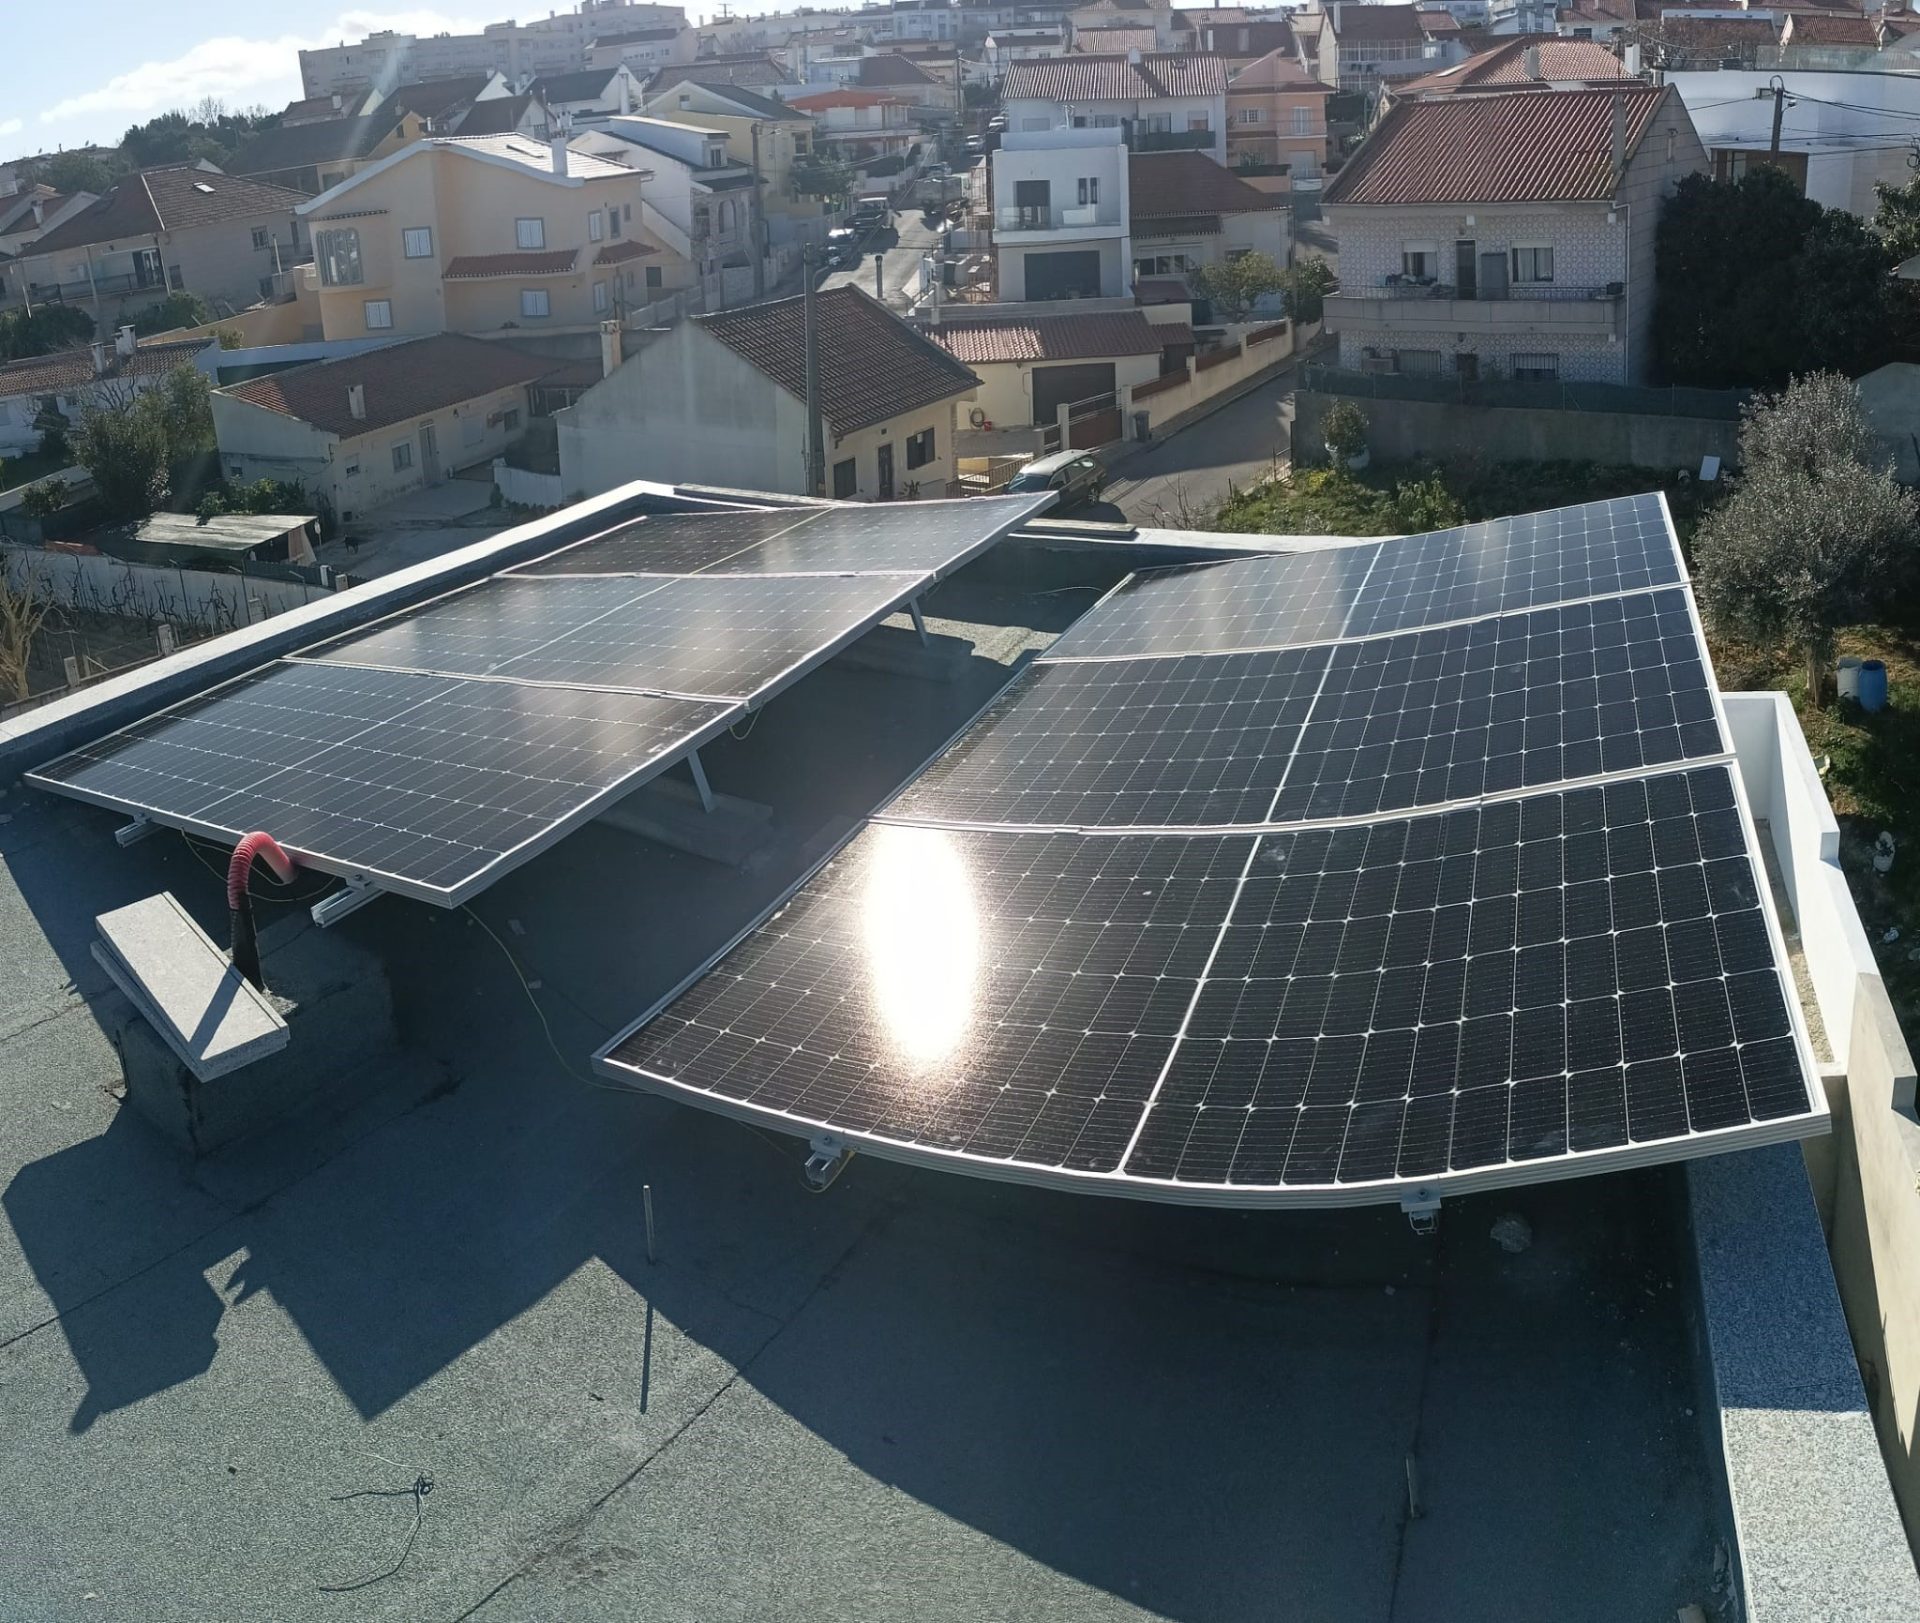 Instalação Solar Fotovoltaica, para a produção de energia elétrica. Modalidade: UPAC Localidade – Santa Iria de Azoia